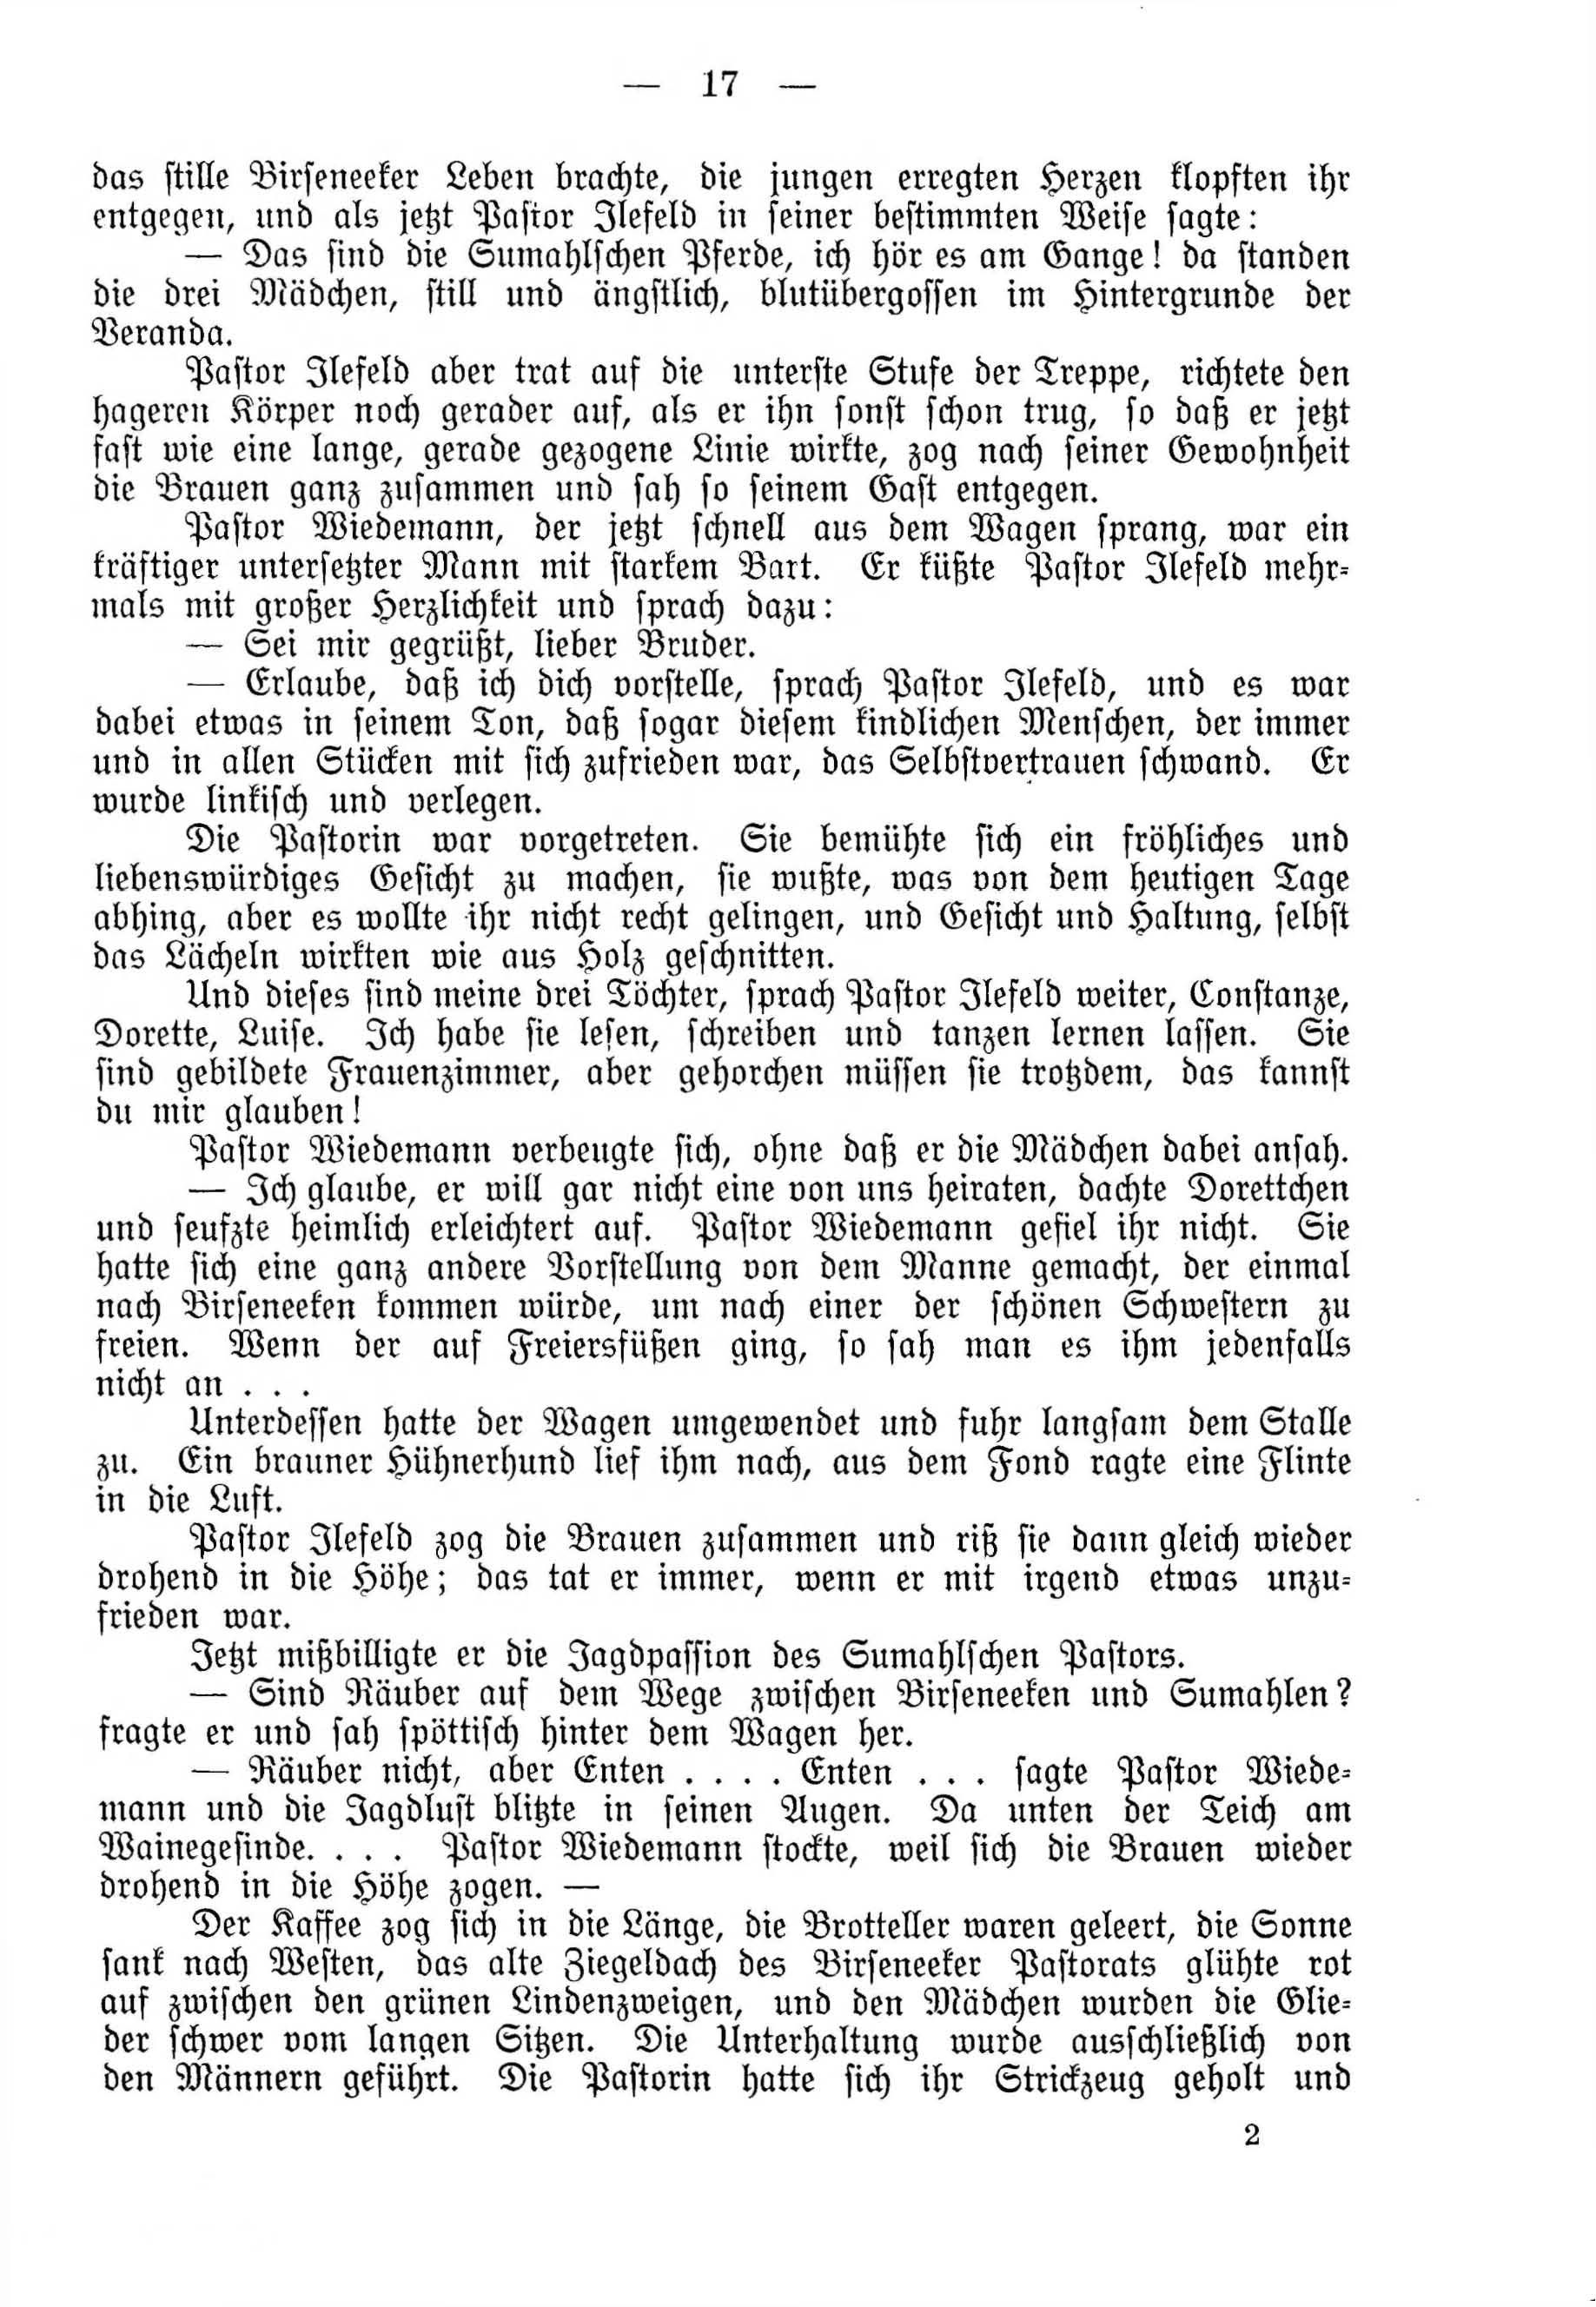 Deutsche Monatsschrift für Russland [4] (1915) | 17. (17) Main body of text